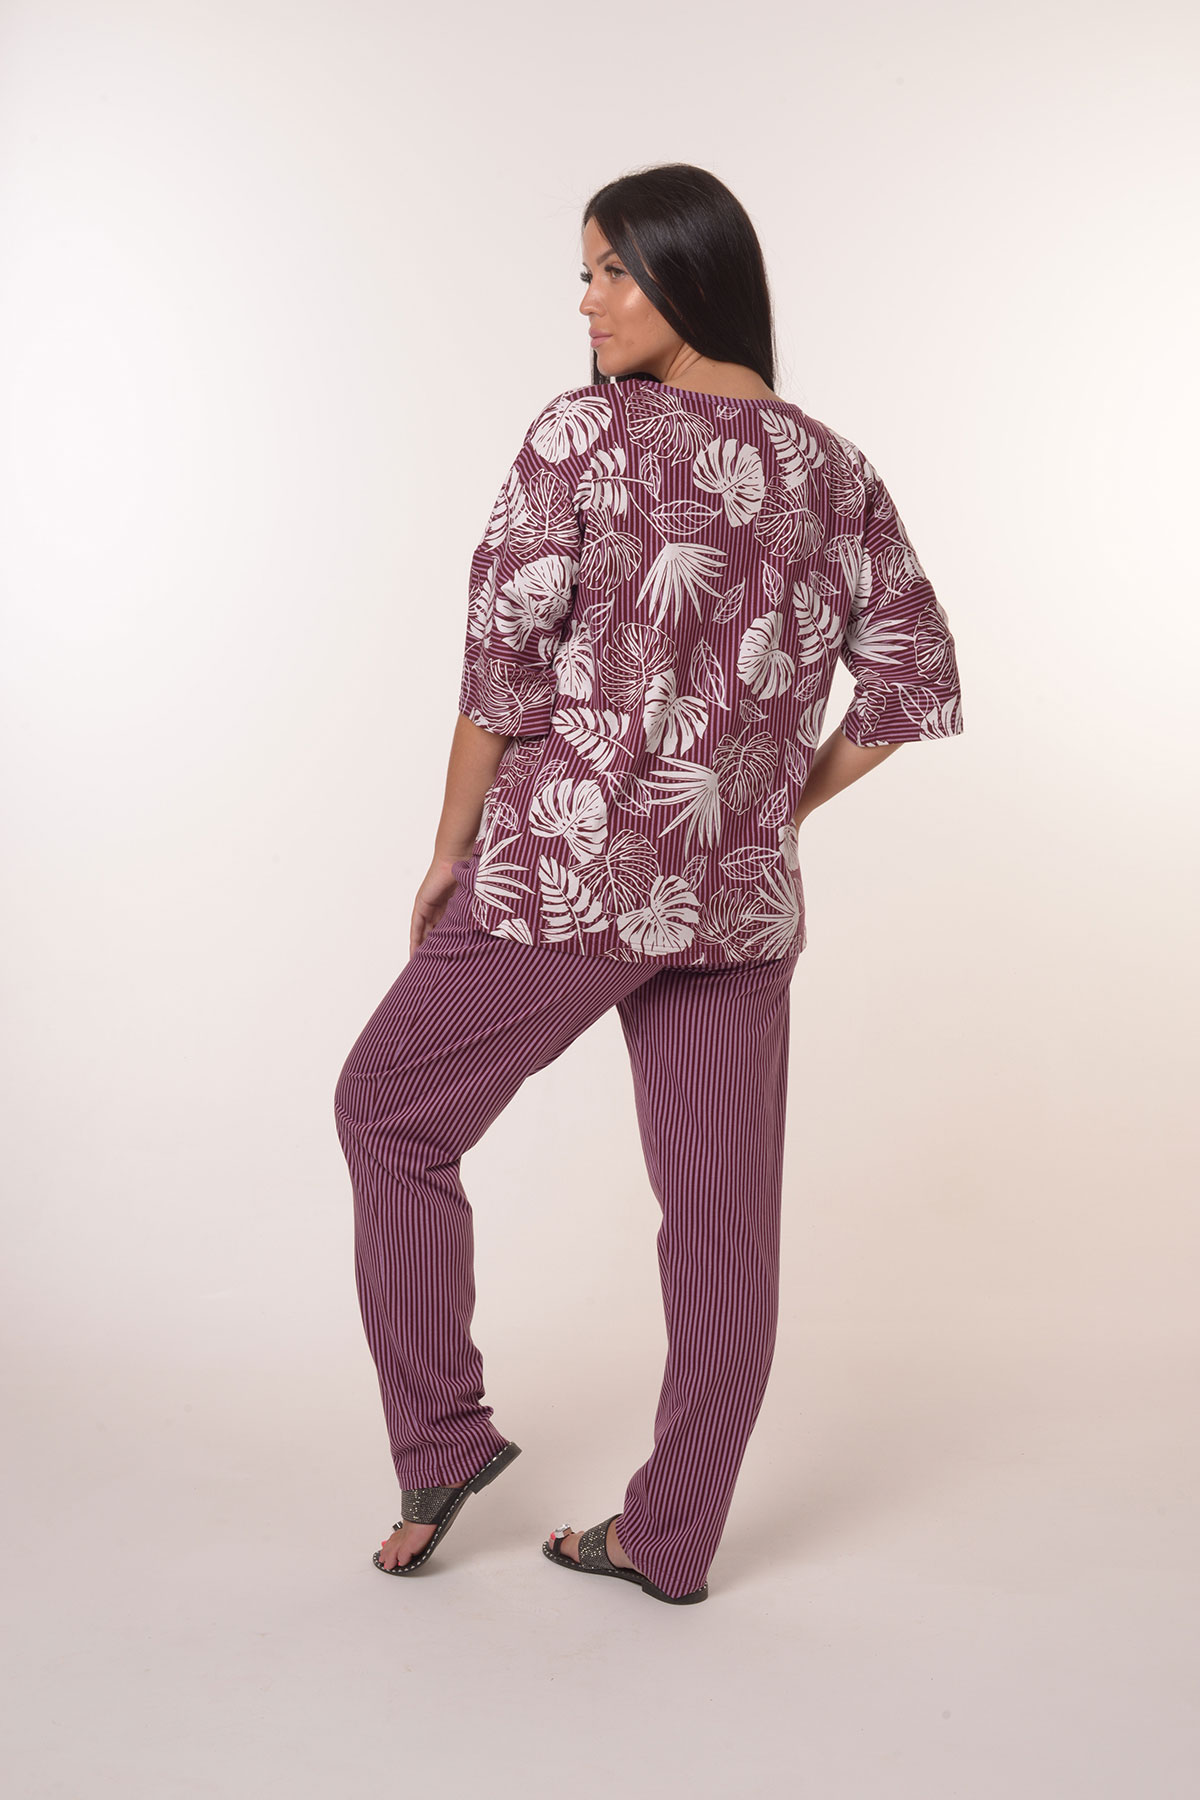 Жен. костюм повседневный арт. 23-0390 Фиолетовый р. 64 Моделлини, размер 64 - фото 4